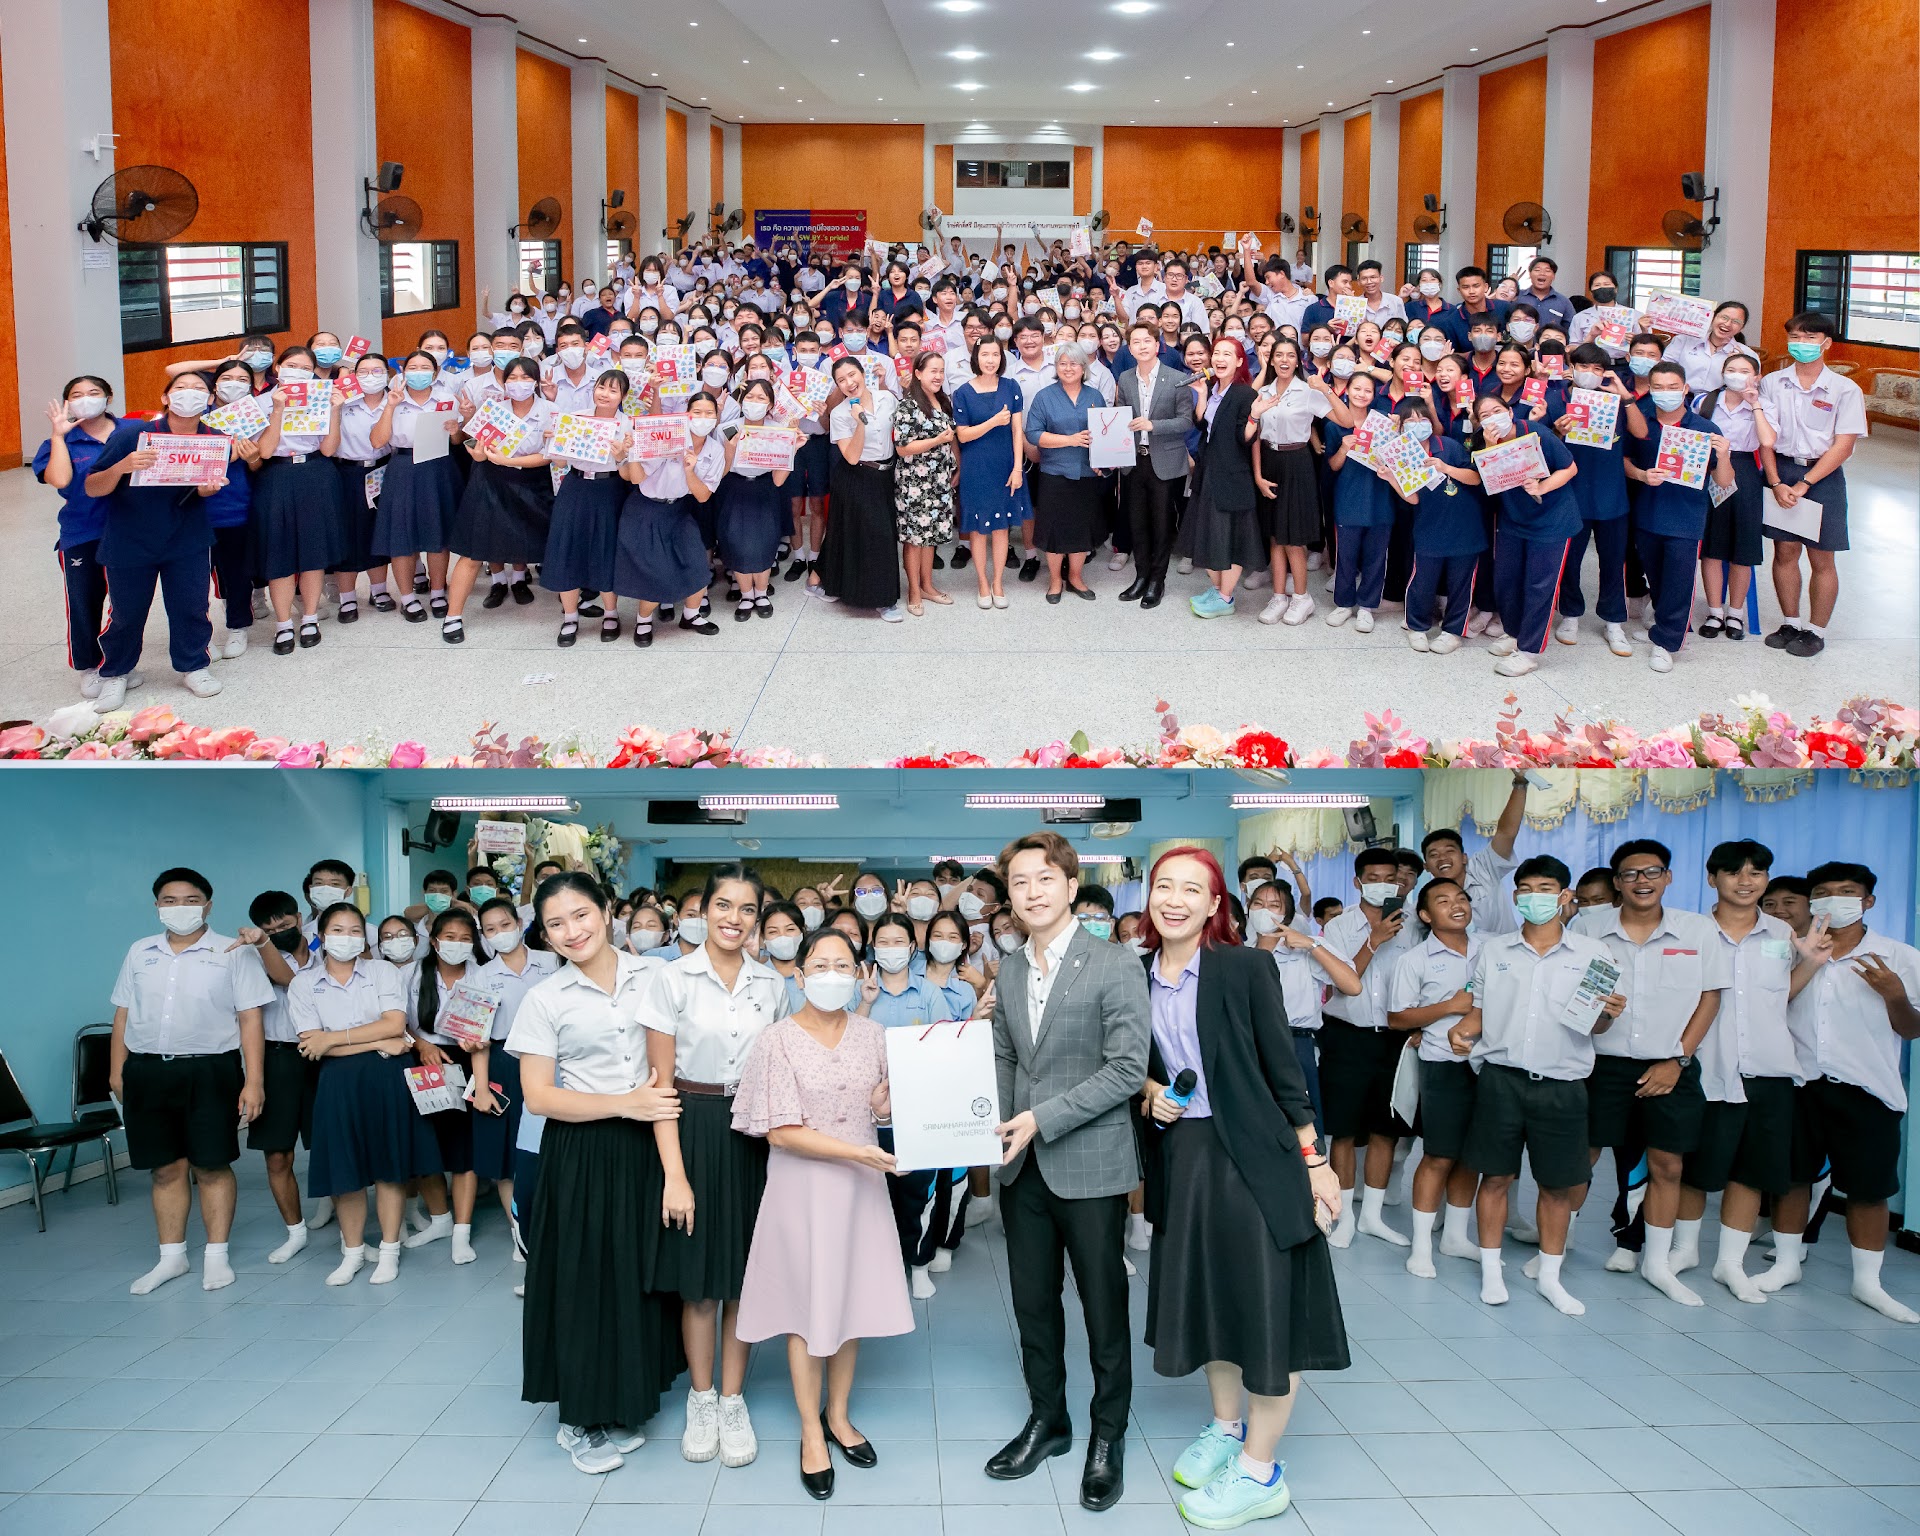 โรงเรียนเฉลิมพระเกียรติสมเด็จพระศรีนครินทร์ และ โรงเรียนระยองวิทยาคมปากน้ำ SWU 2 School